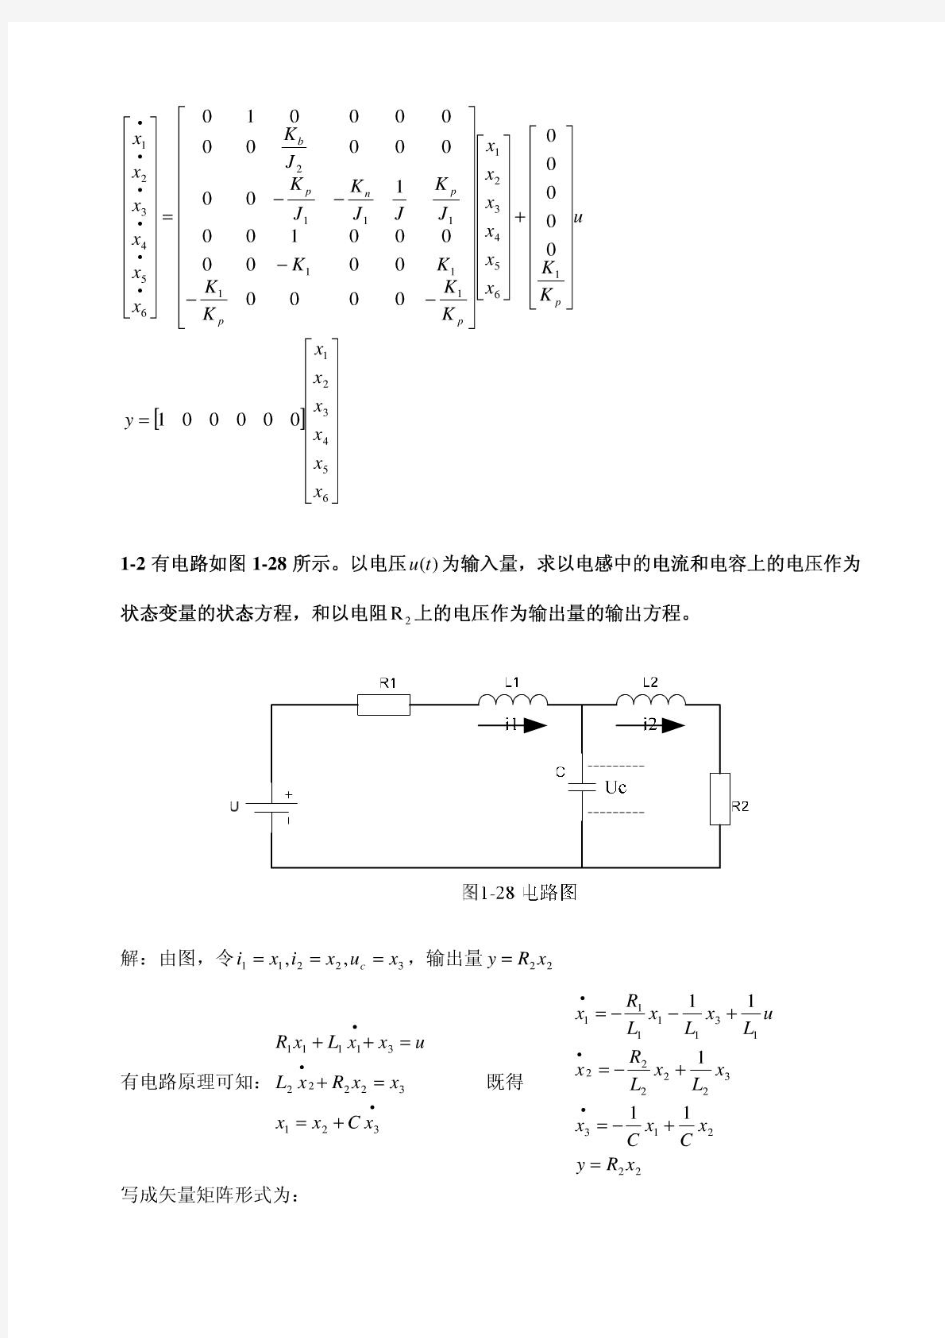 1《现代控制理论》刘豹著(第3版)课后习题答案(最完整版)